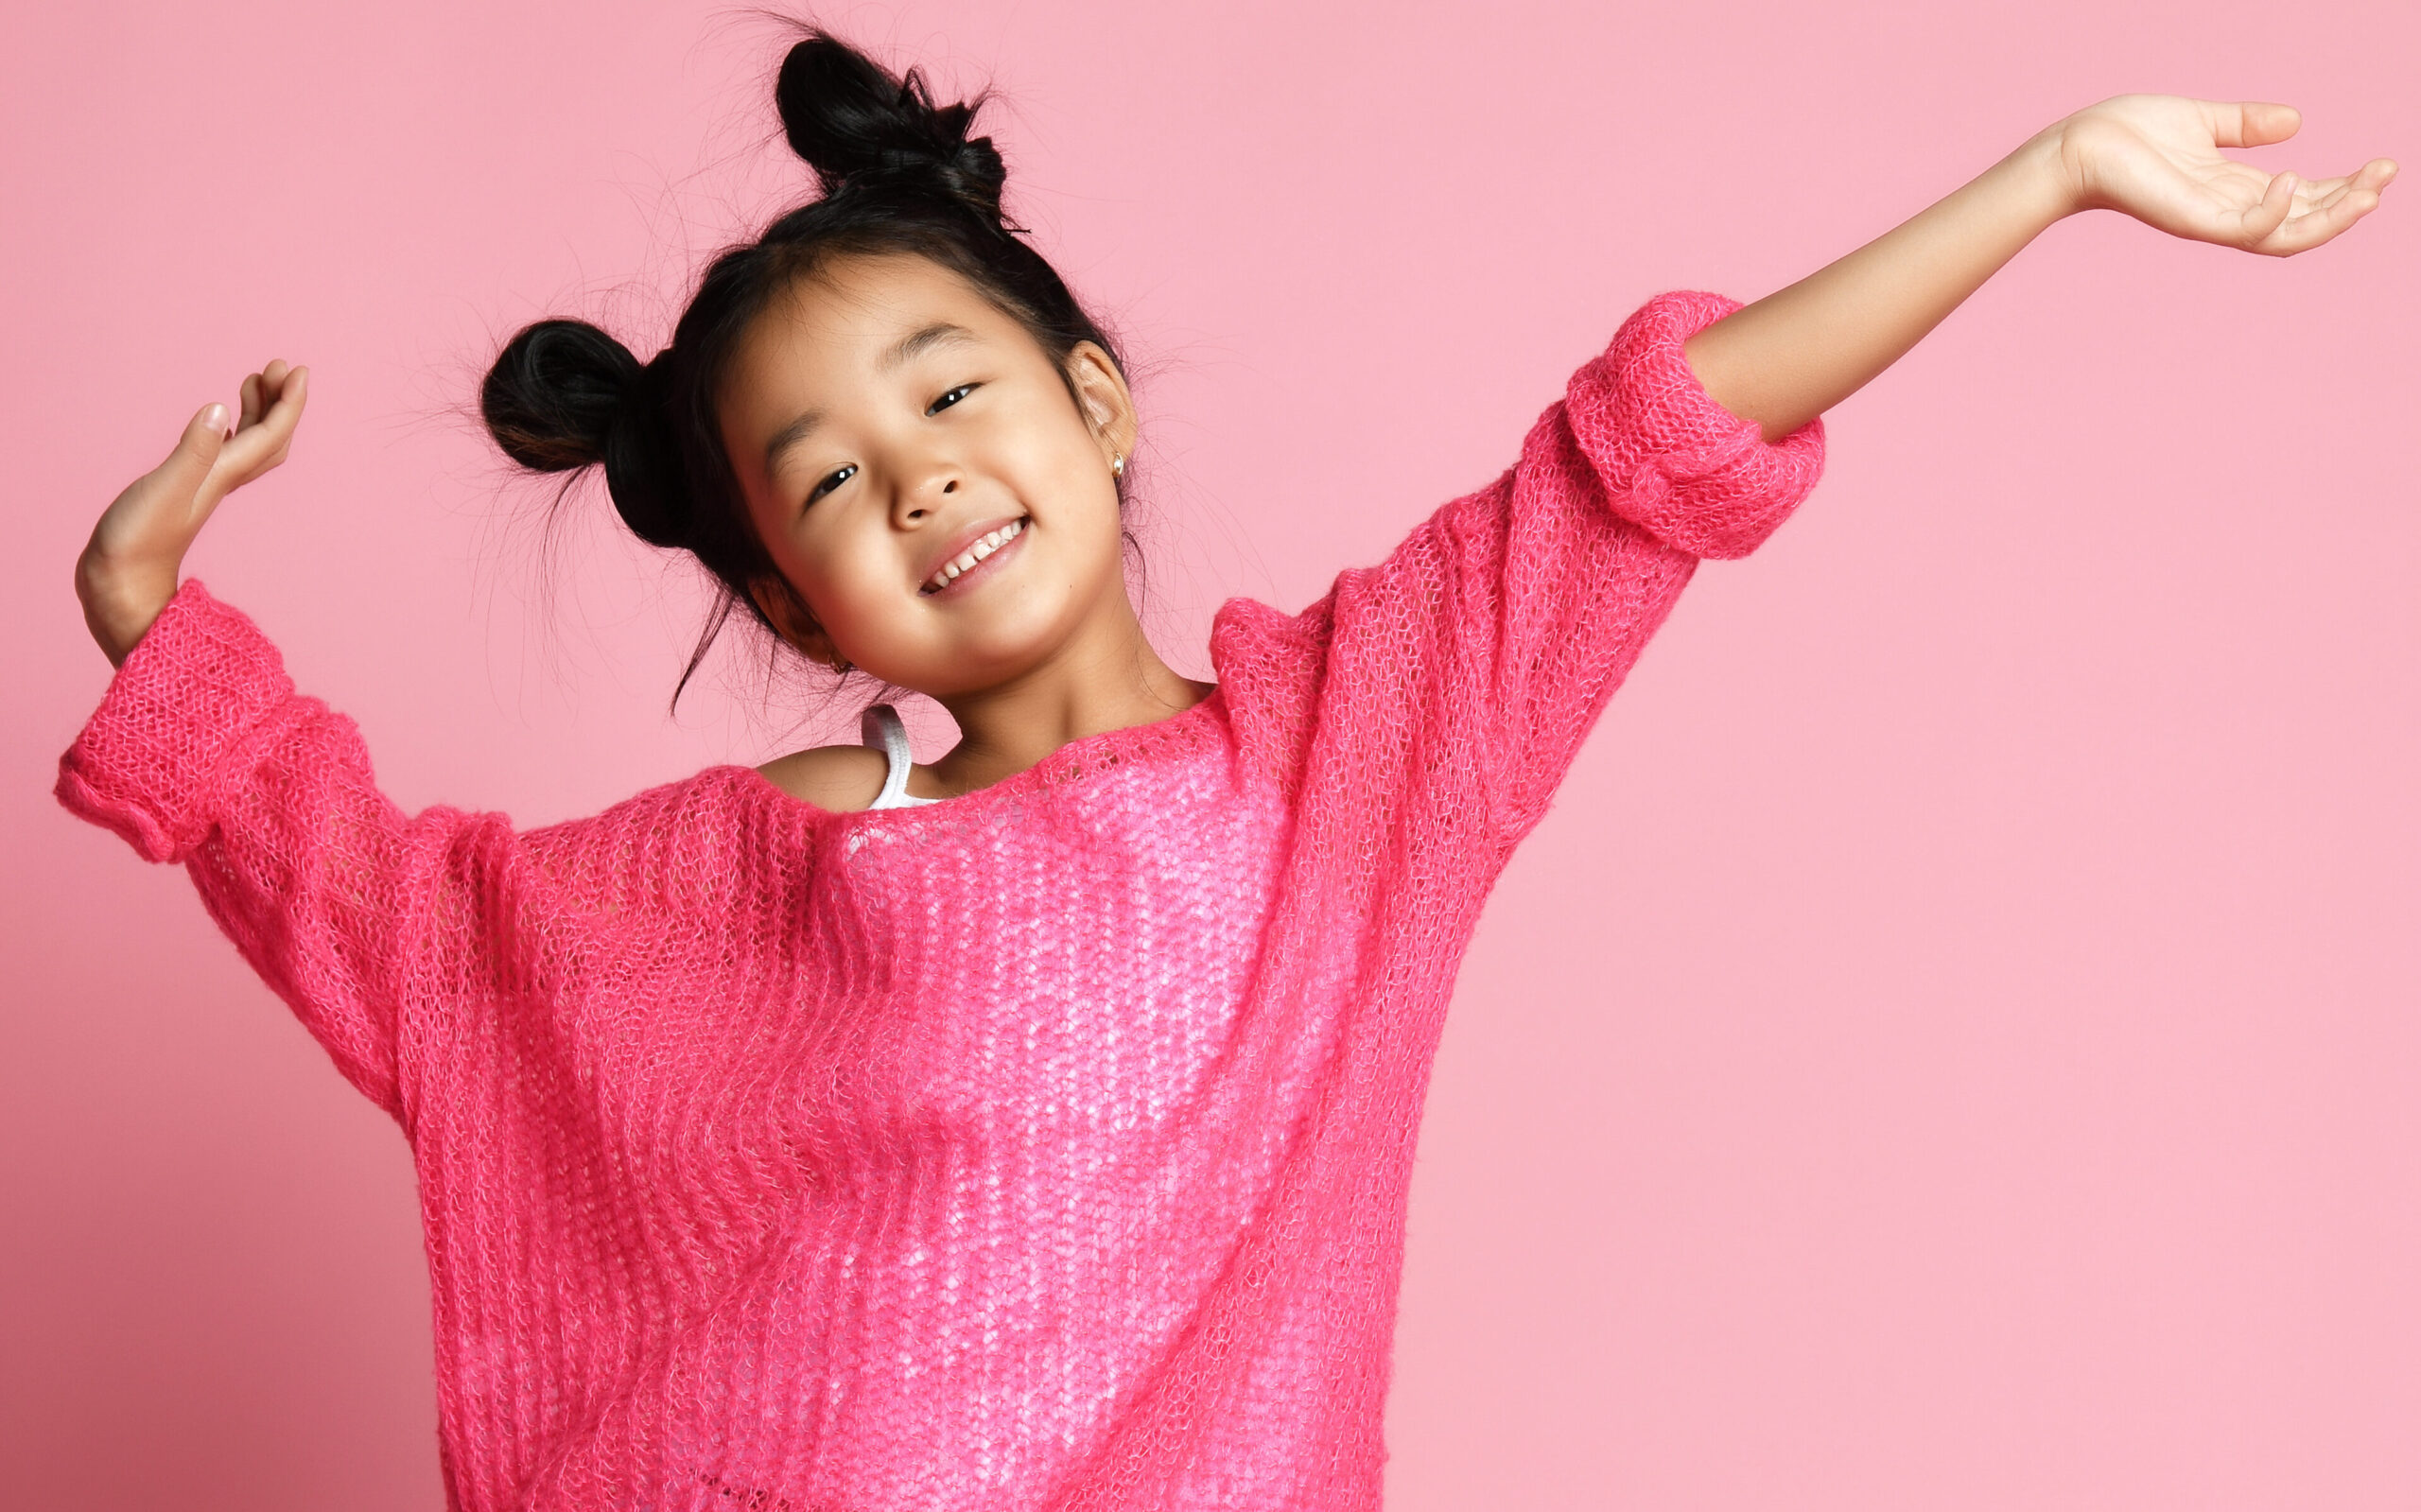 joyful Asian girl in pink